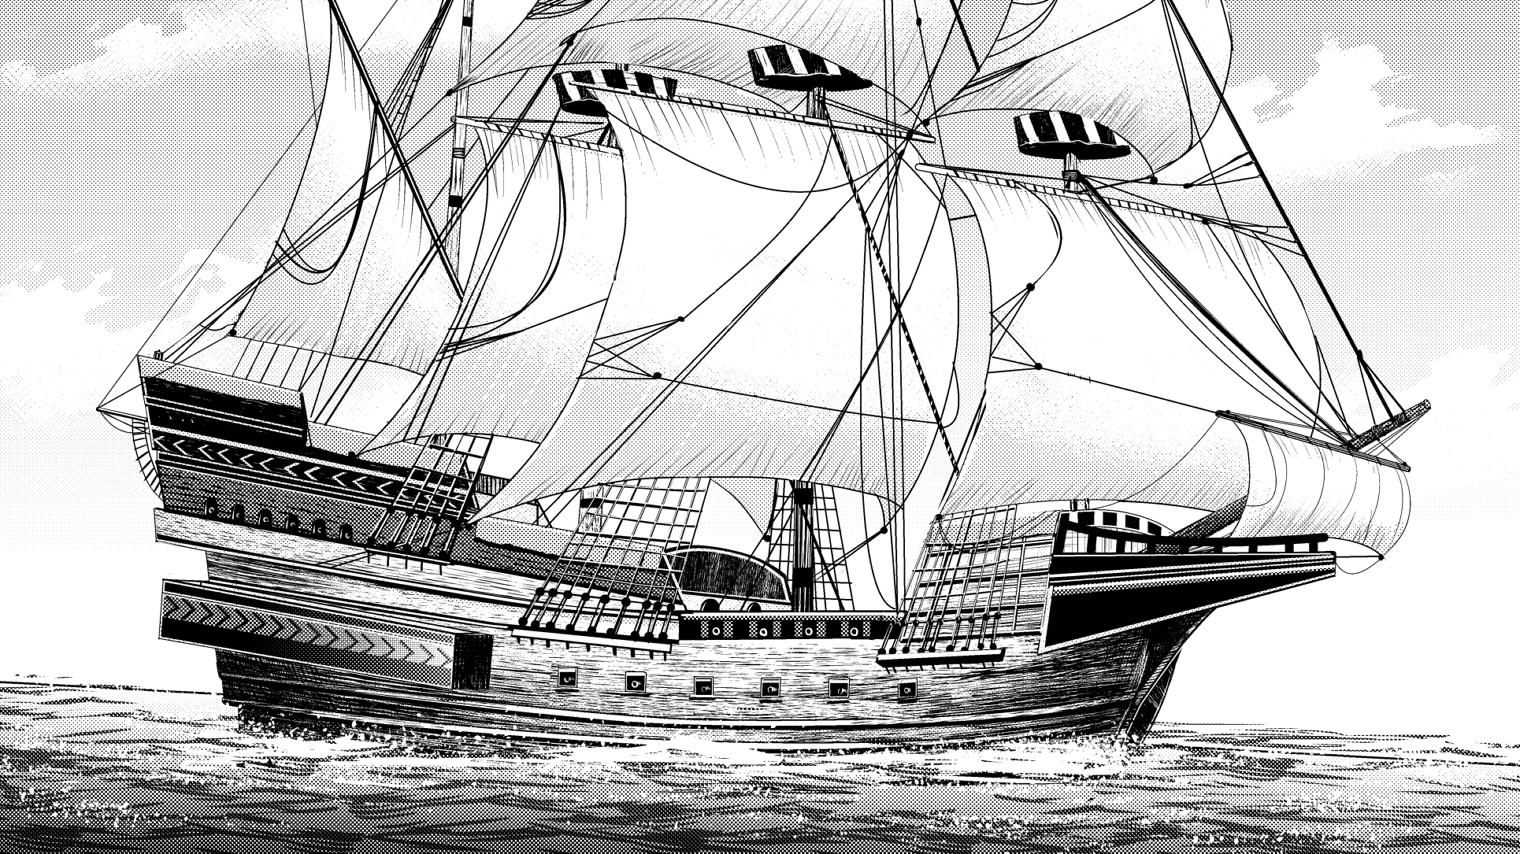 ジェントリ吉田 G Yoshida 16世紀後半のガレオン船 以前描いたアルマダ海戦を題材にした漫画から スペイン 艦隊 アルマダ の目的はイングランドの攻略でしたが敵艦隊との戦闘に妨害 様々な要因から計画は失敗 戦闘で損傷した船もあるなかで帰還途中に